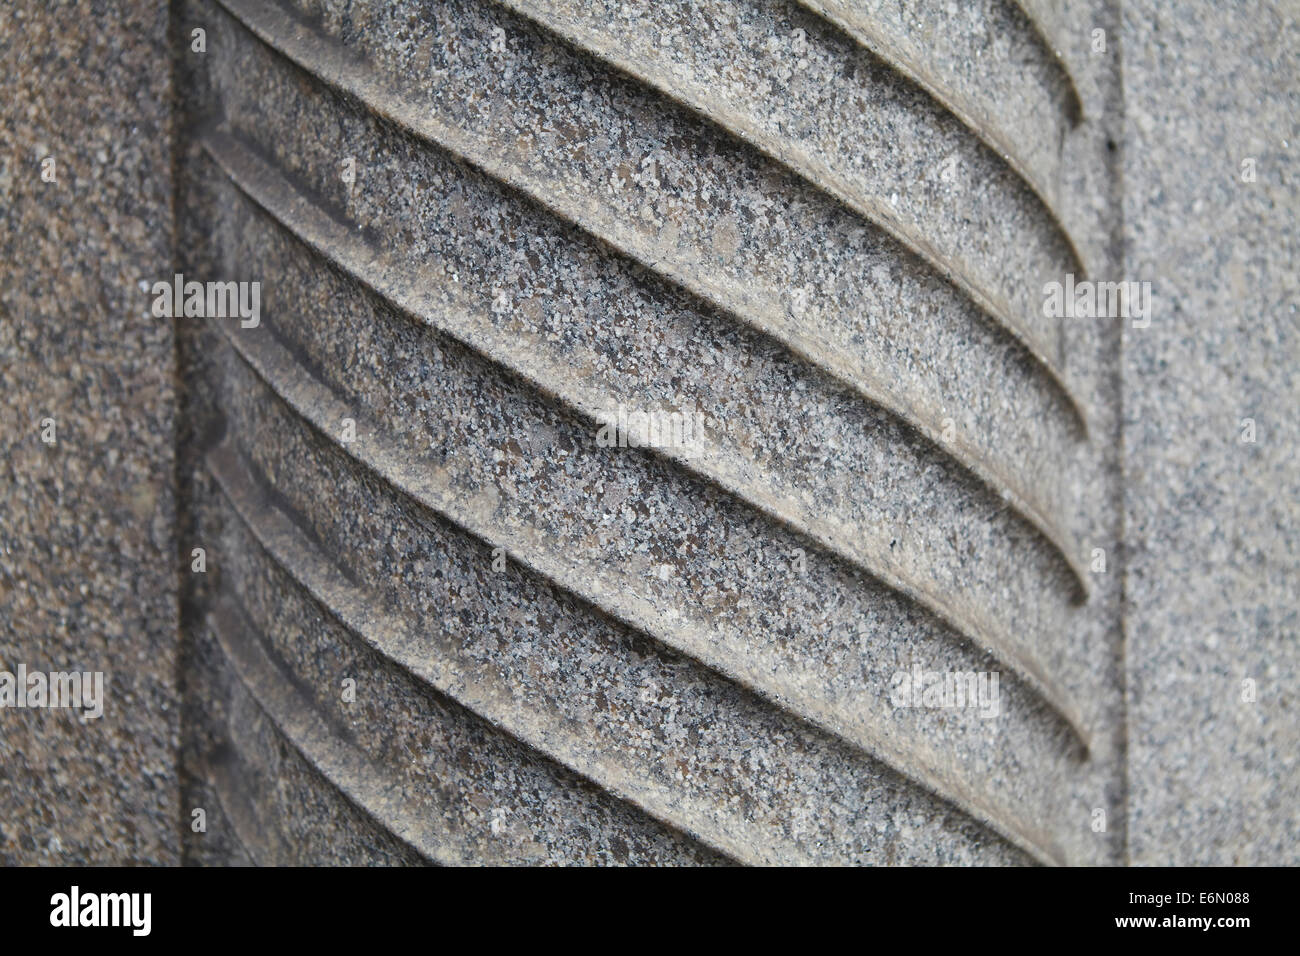 London-Texturen, typischen grauen Stein.  Spalte Muster. Stockfoto